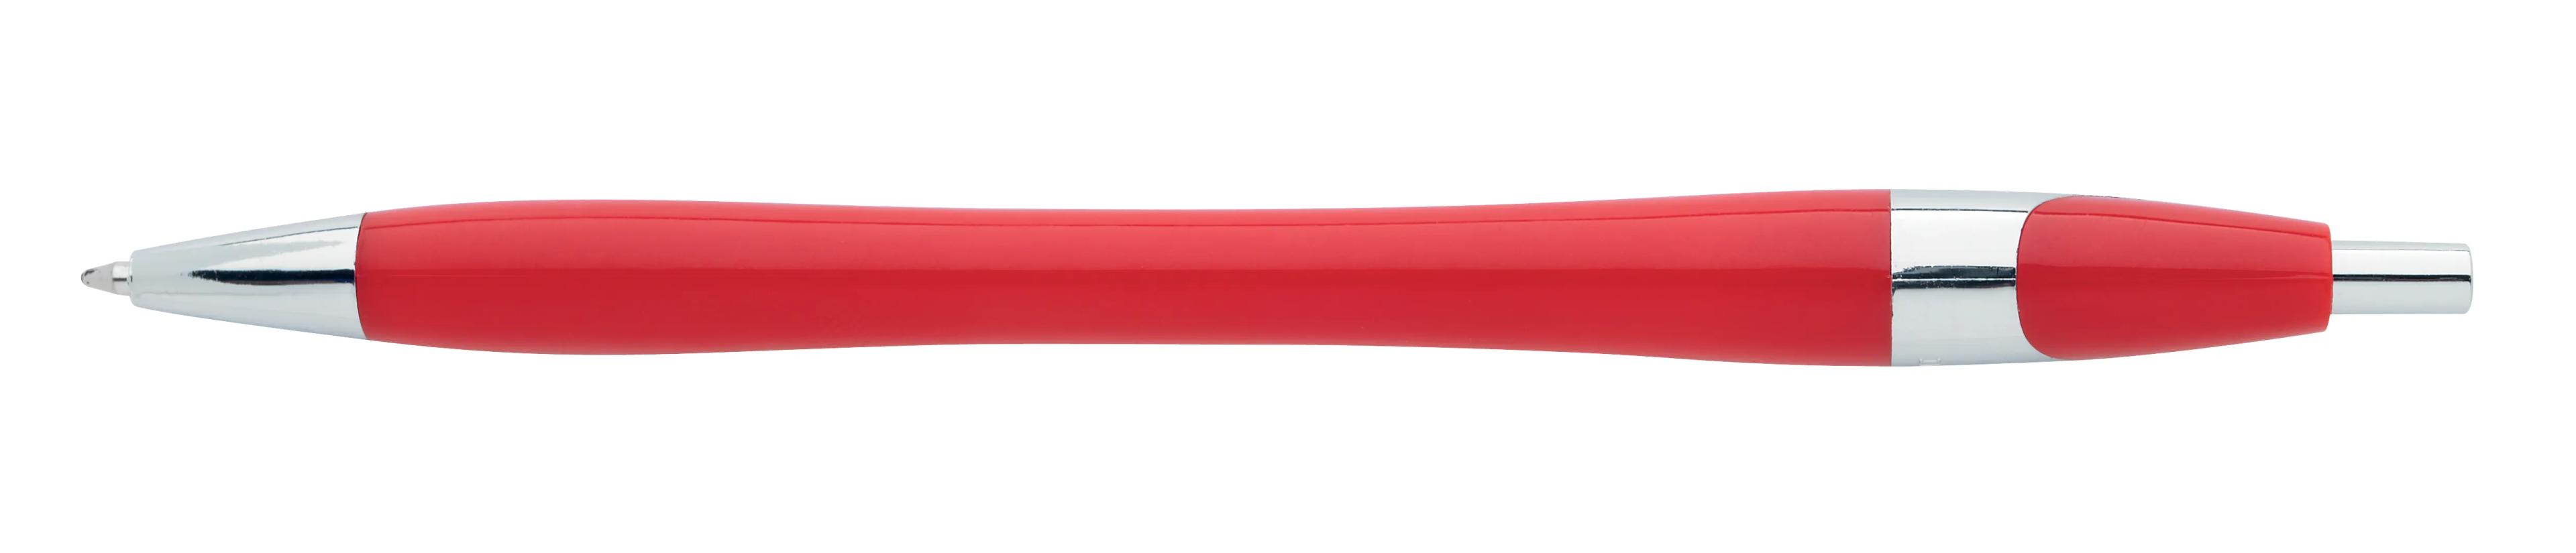 Chrome Dart Pen 8 of 32